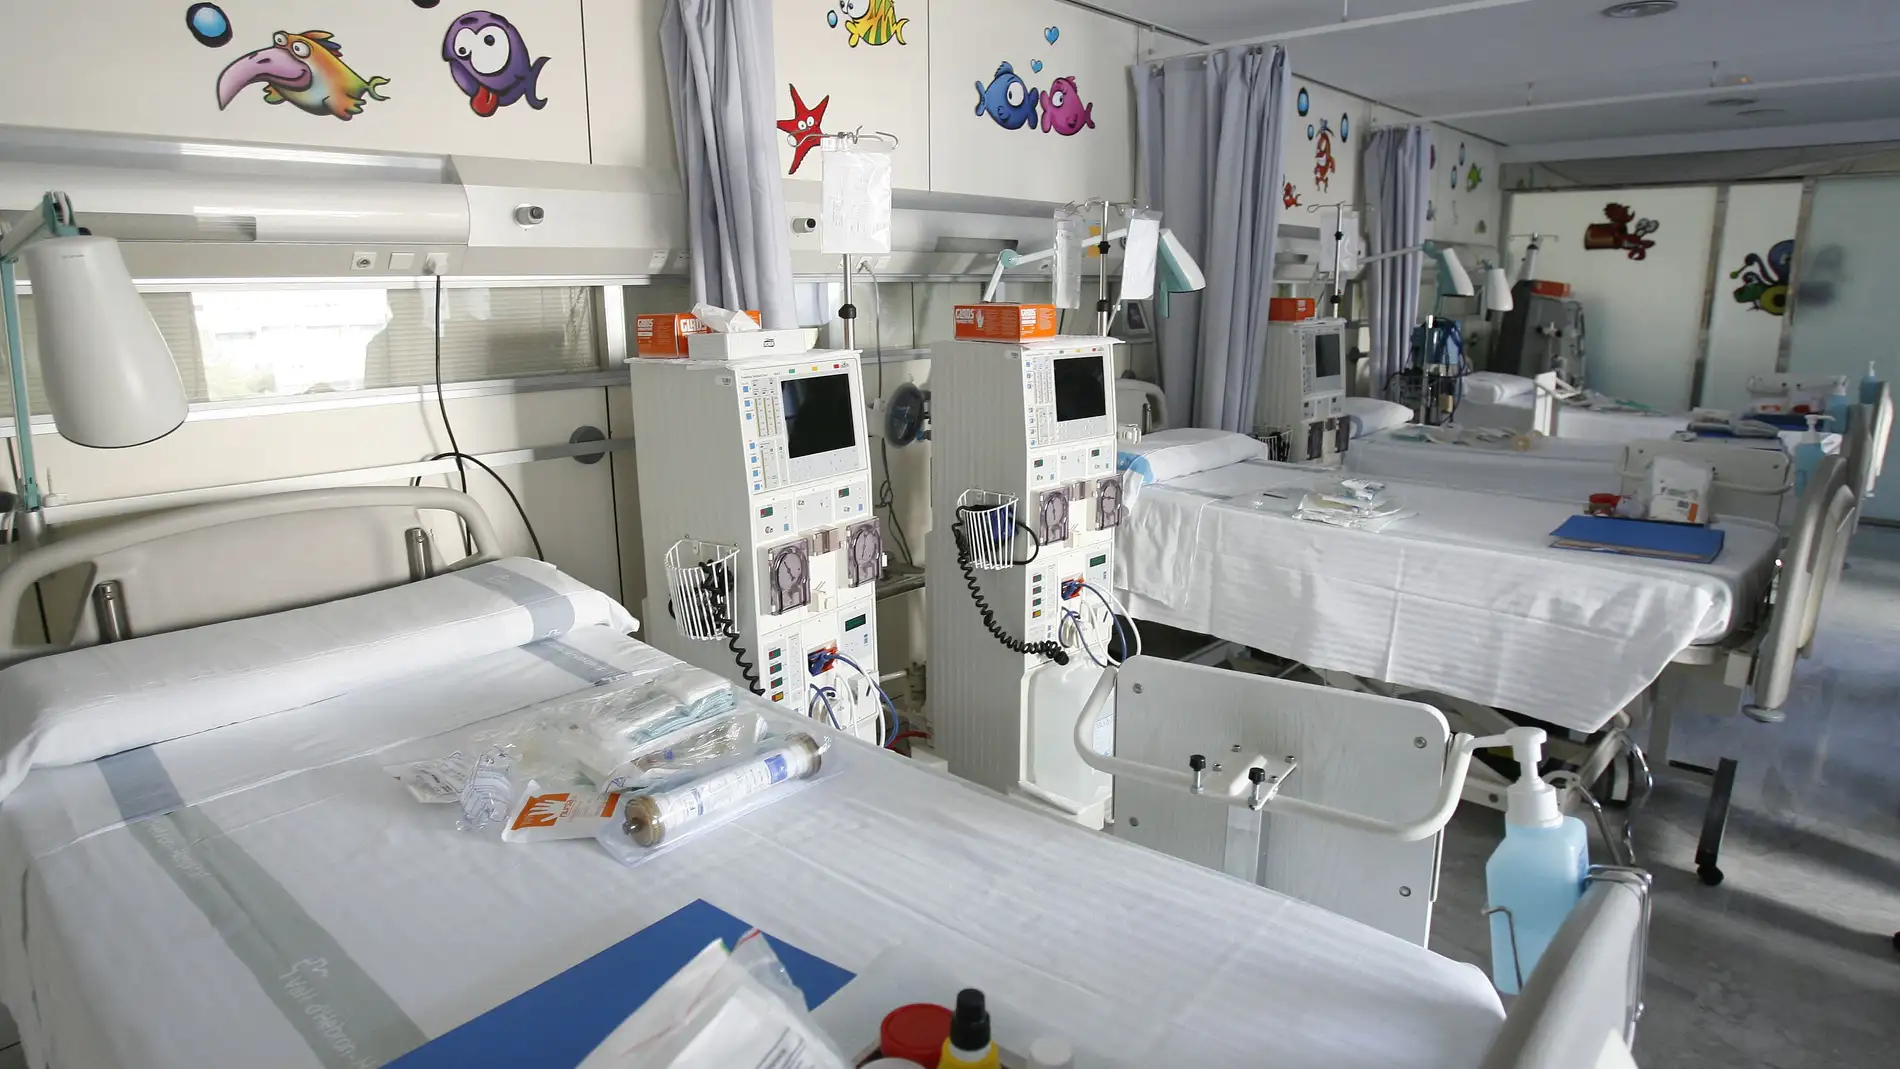 Sala infantil Hospital Vall d'Hebron